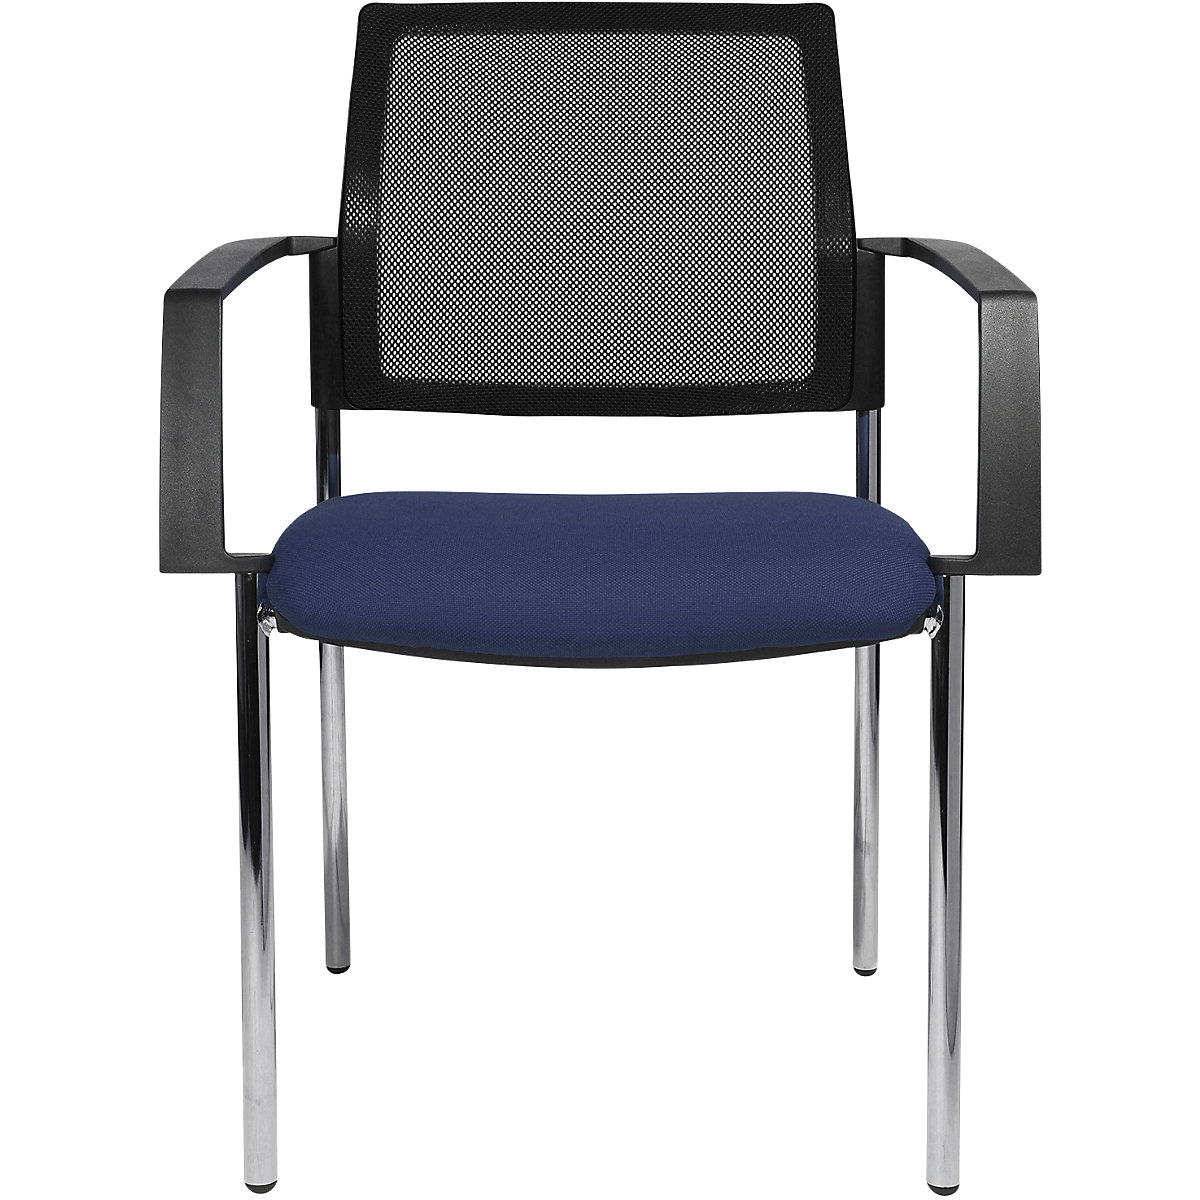 Síťovaná stohovací židle – Topstar, 4 nohy, bal.j. 2 ks, modrý sedák, pochromovaný podstavec-7